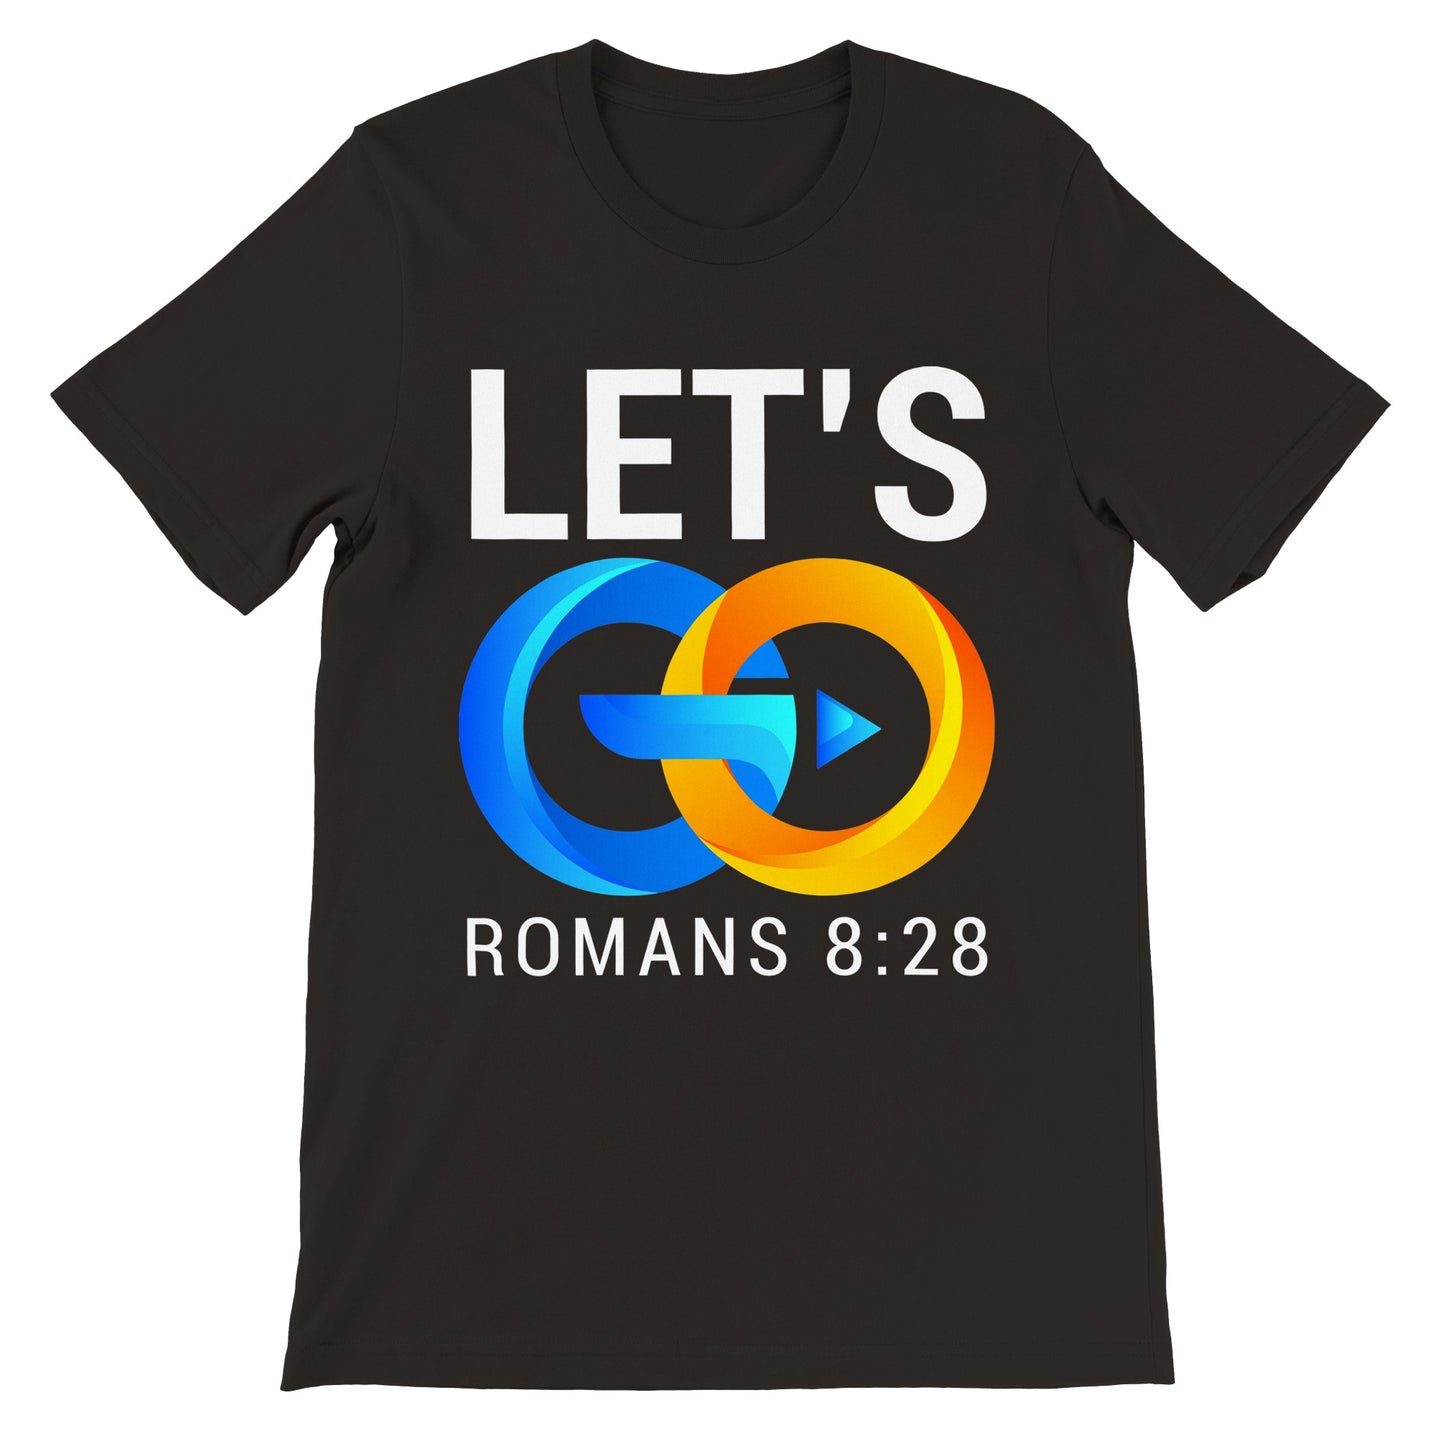 Let's Go Rom 8:28 T-shirt